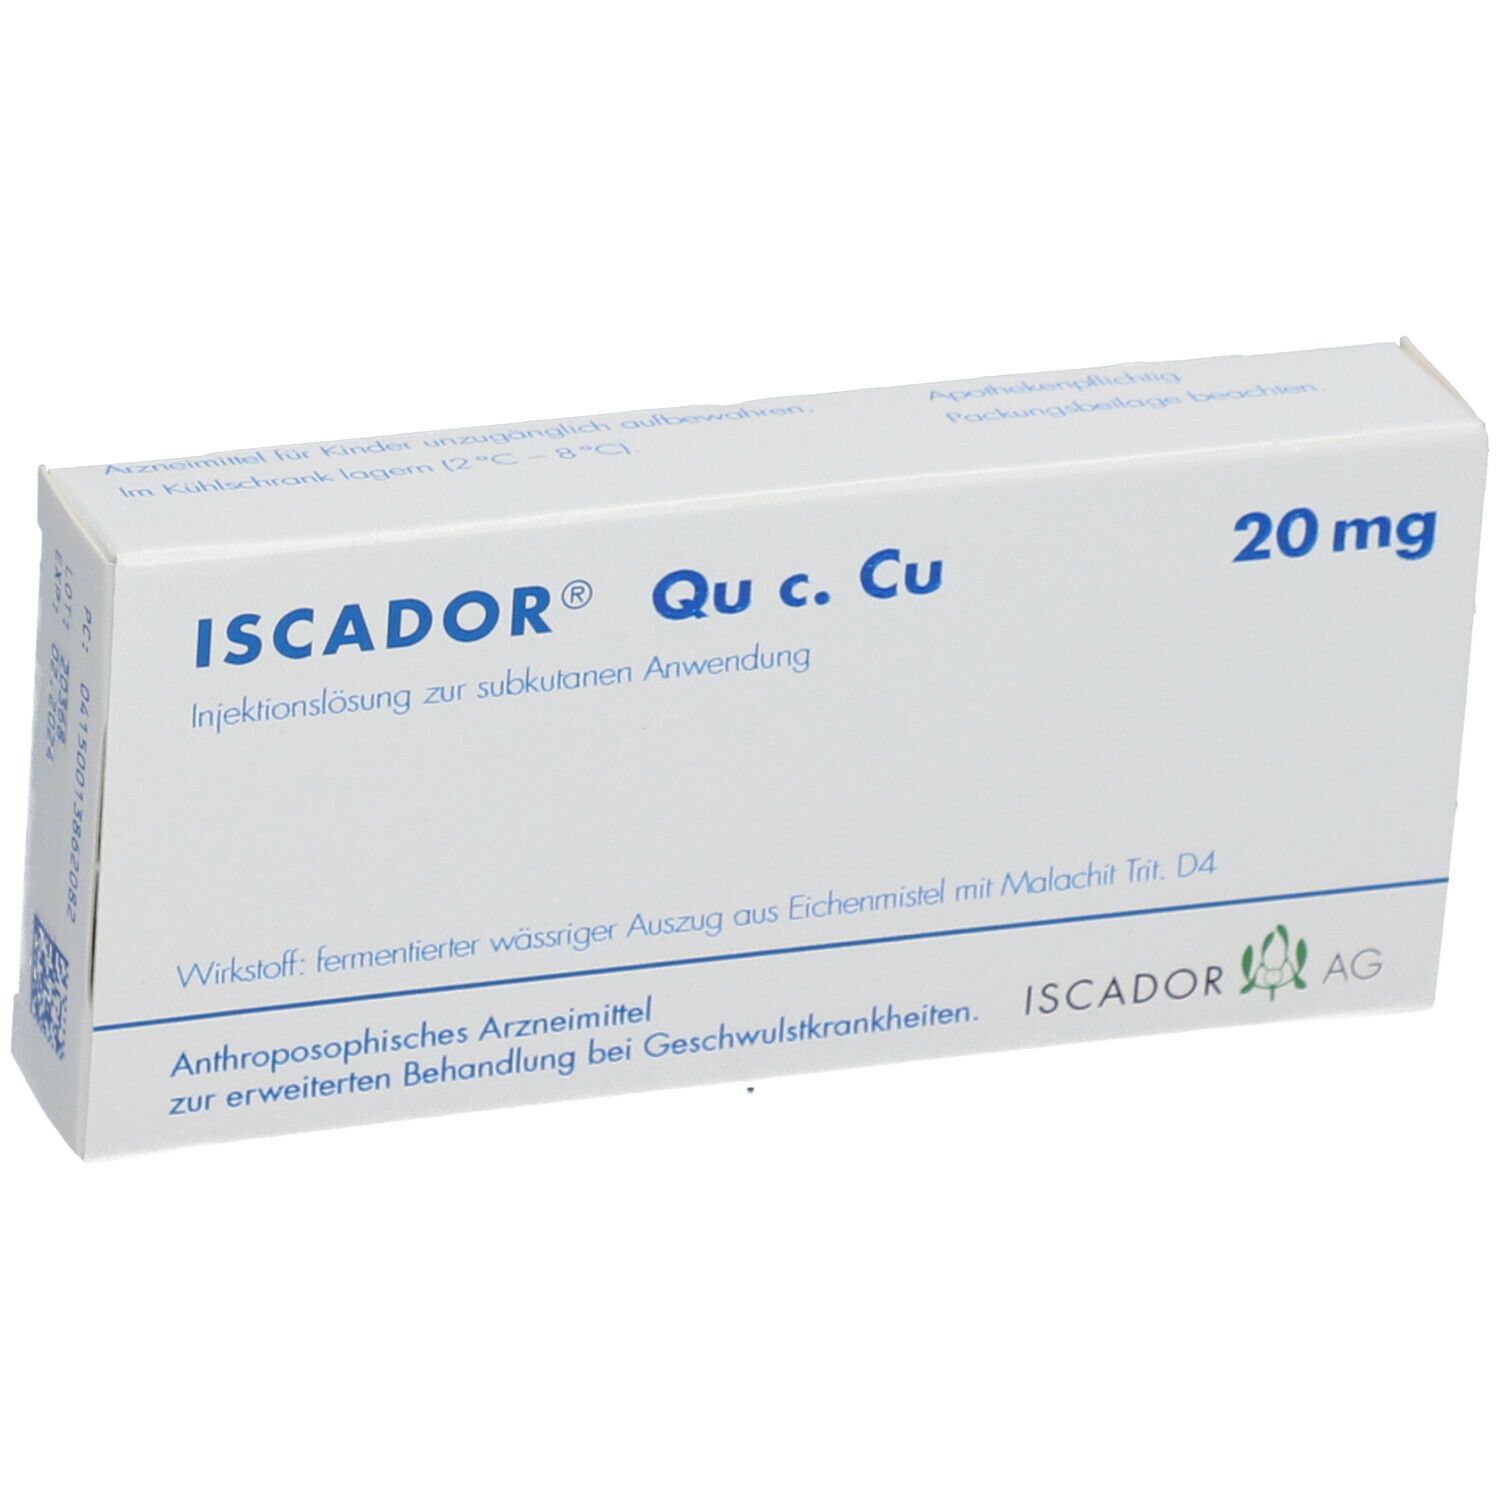 ISCADOR® Qu c. Cu 20 mg